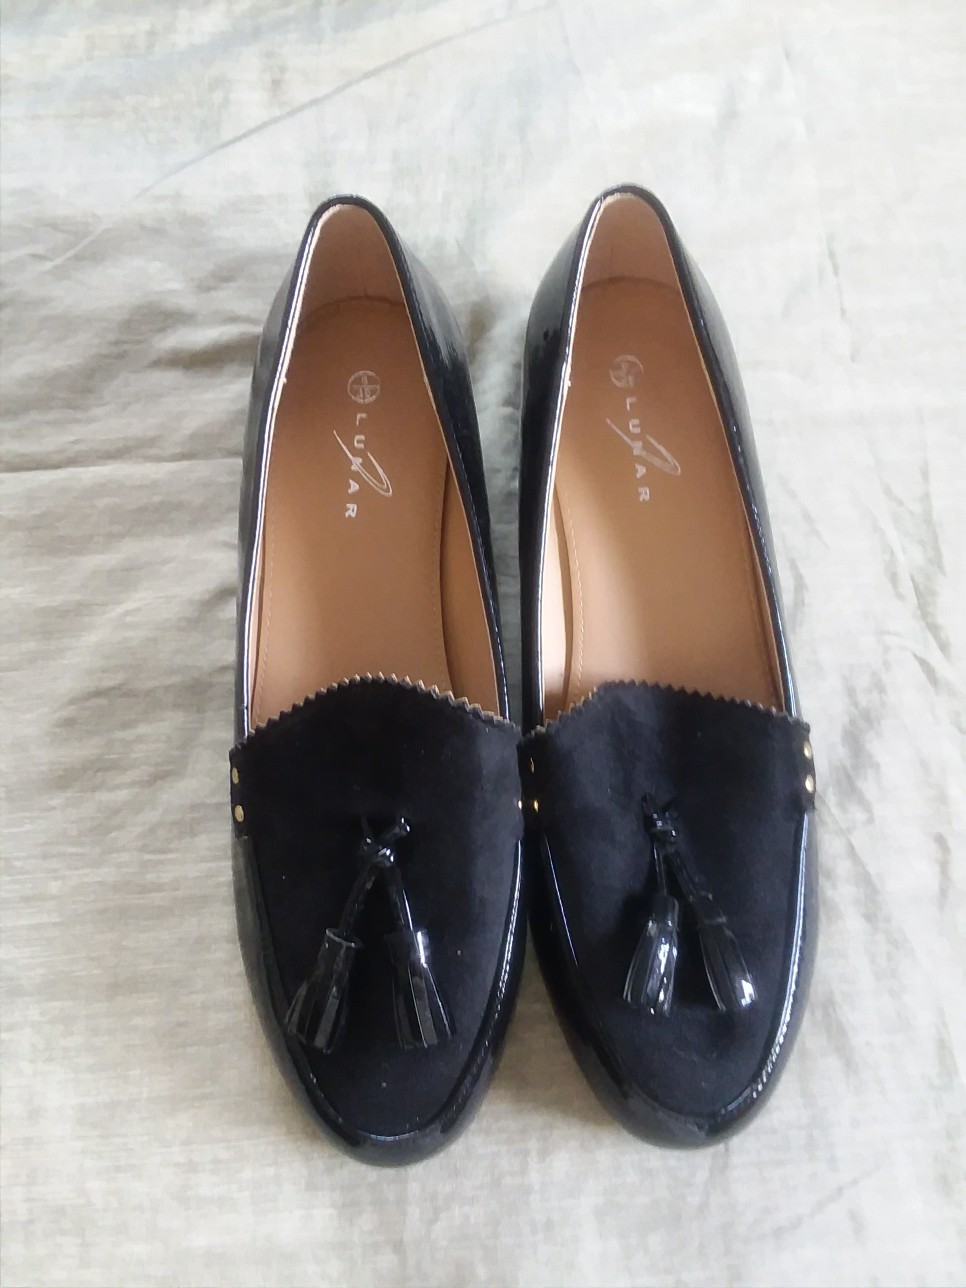 zapatos para mujer - Zapatos Lunar Size 9 nuevo a 700 pesos.